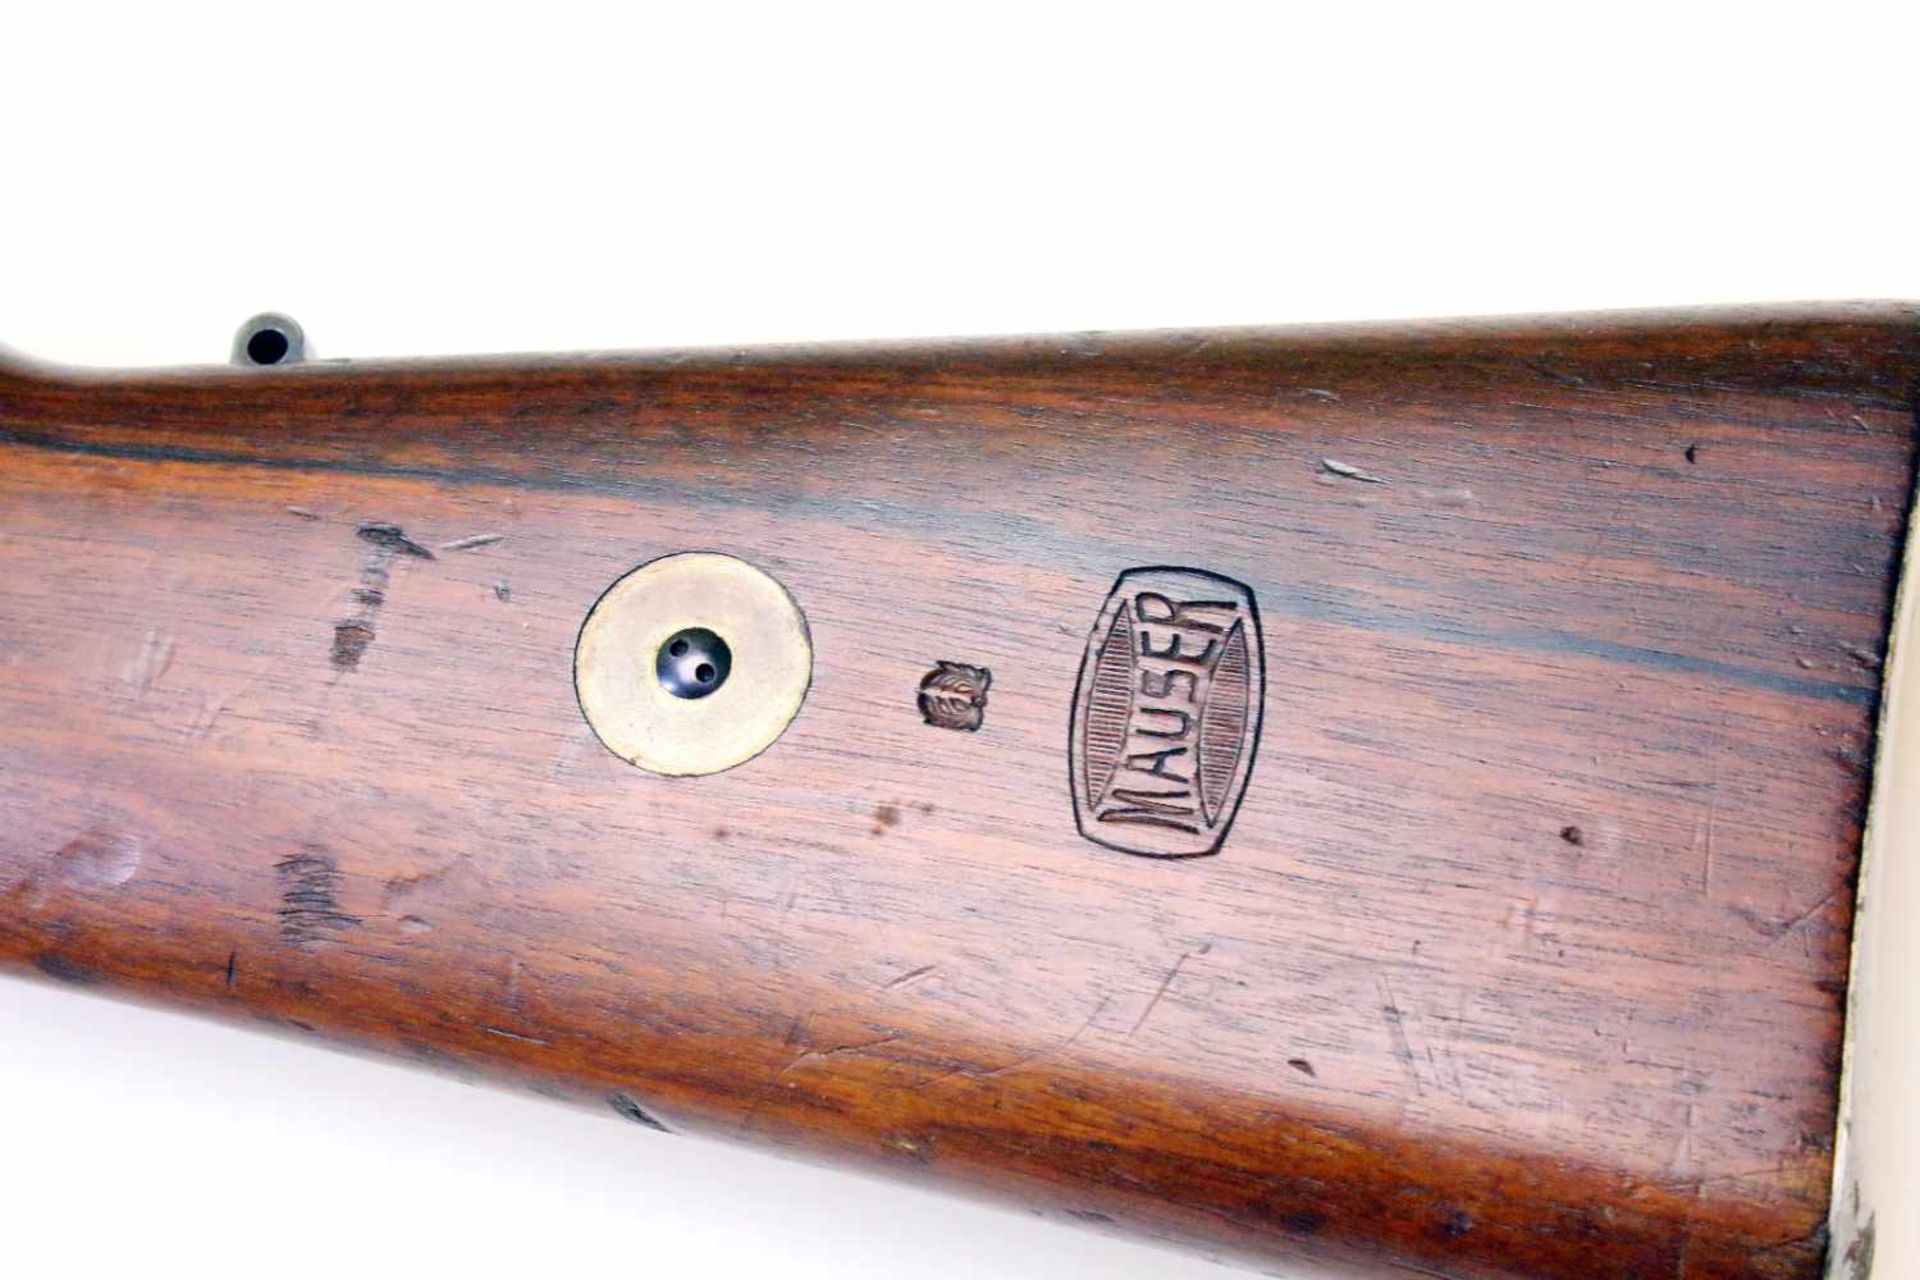 Mausergewehr M1909 Peru Cal. 7,65 x 53mm, Lauf rauh, narbig. Auf der Hülse das peruanische Wappen - Bild 14 aus 16